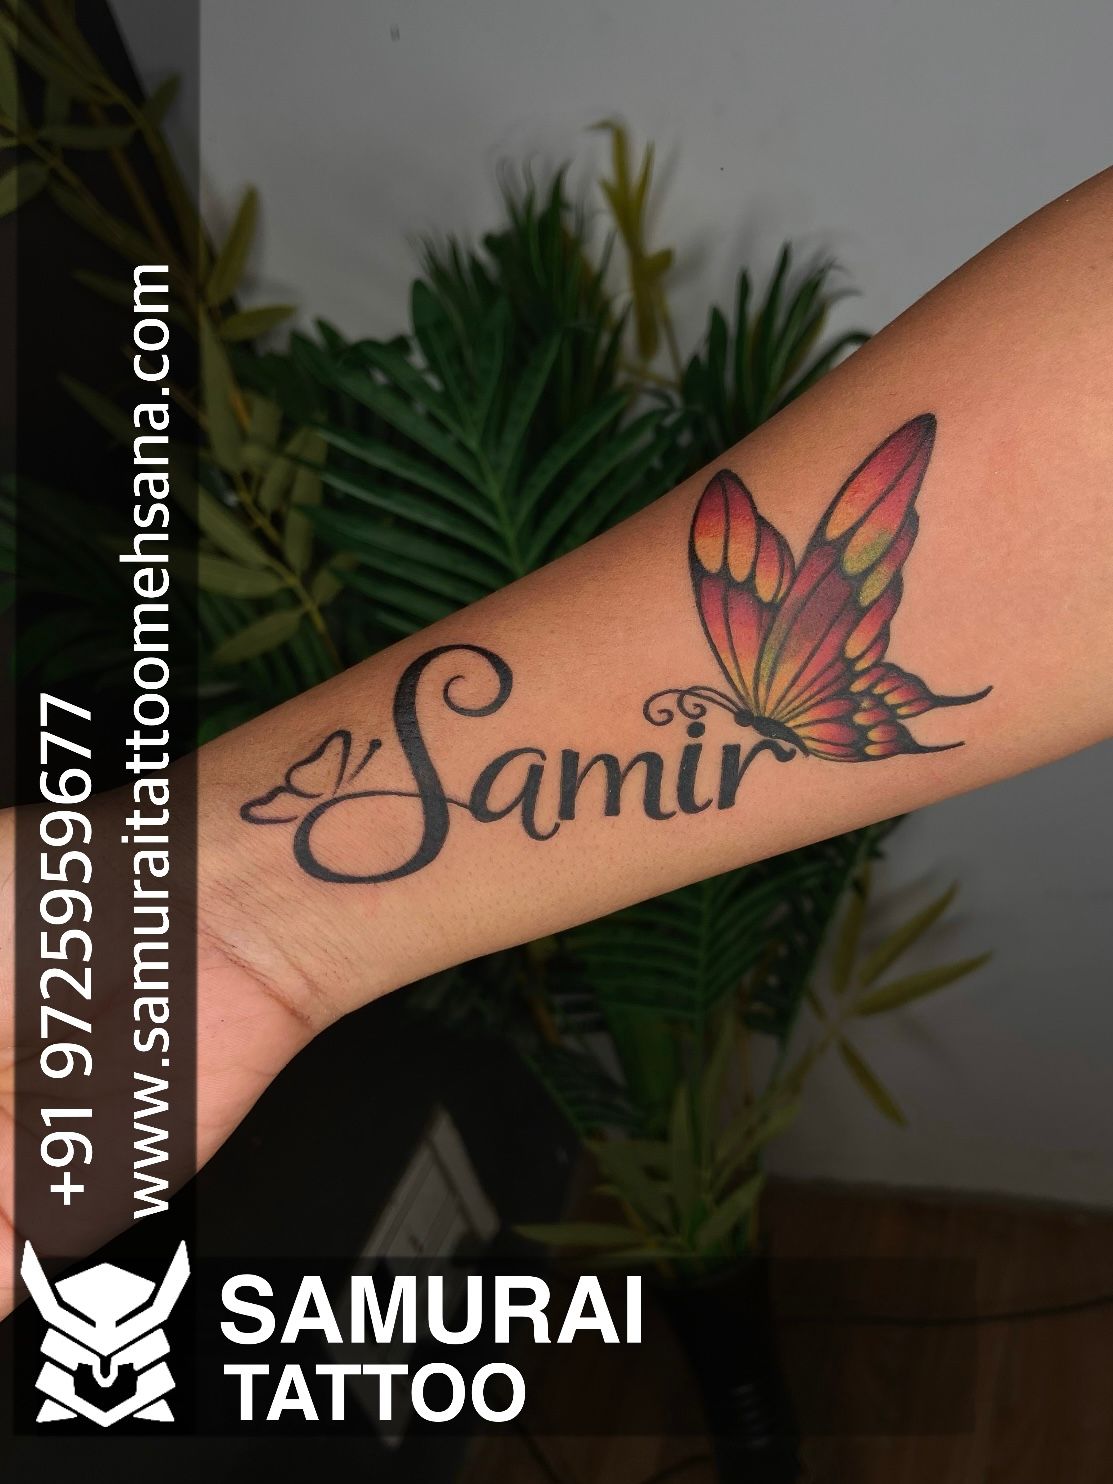 Sanju name tattoo design Artist indraarttattoo indratattooz  Appointment  Call 8128234634 tattoo tattootrend name  Instagram